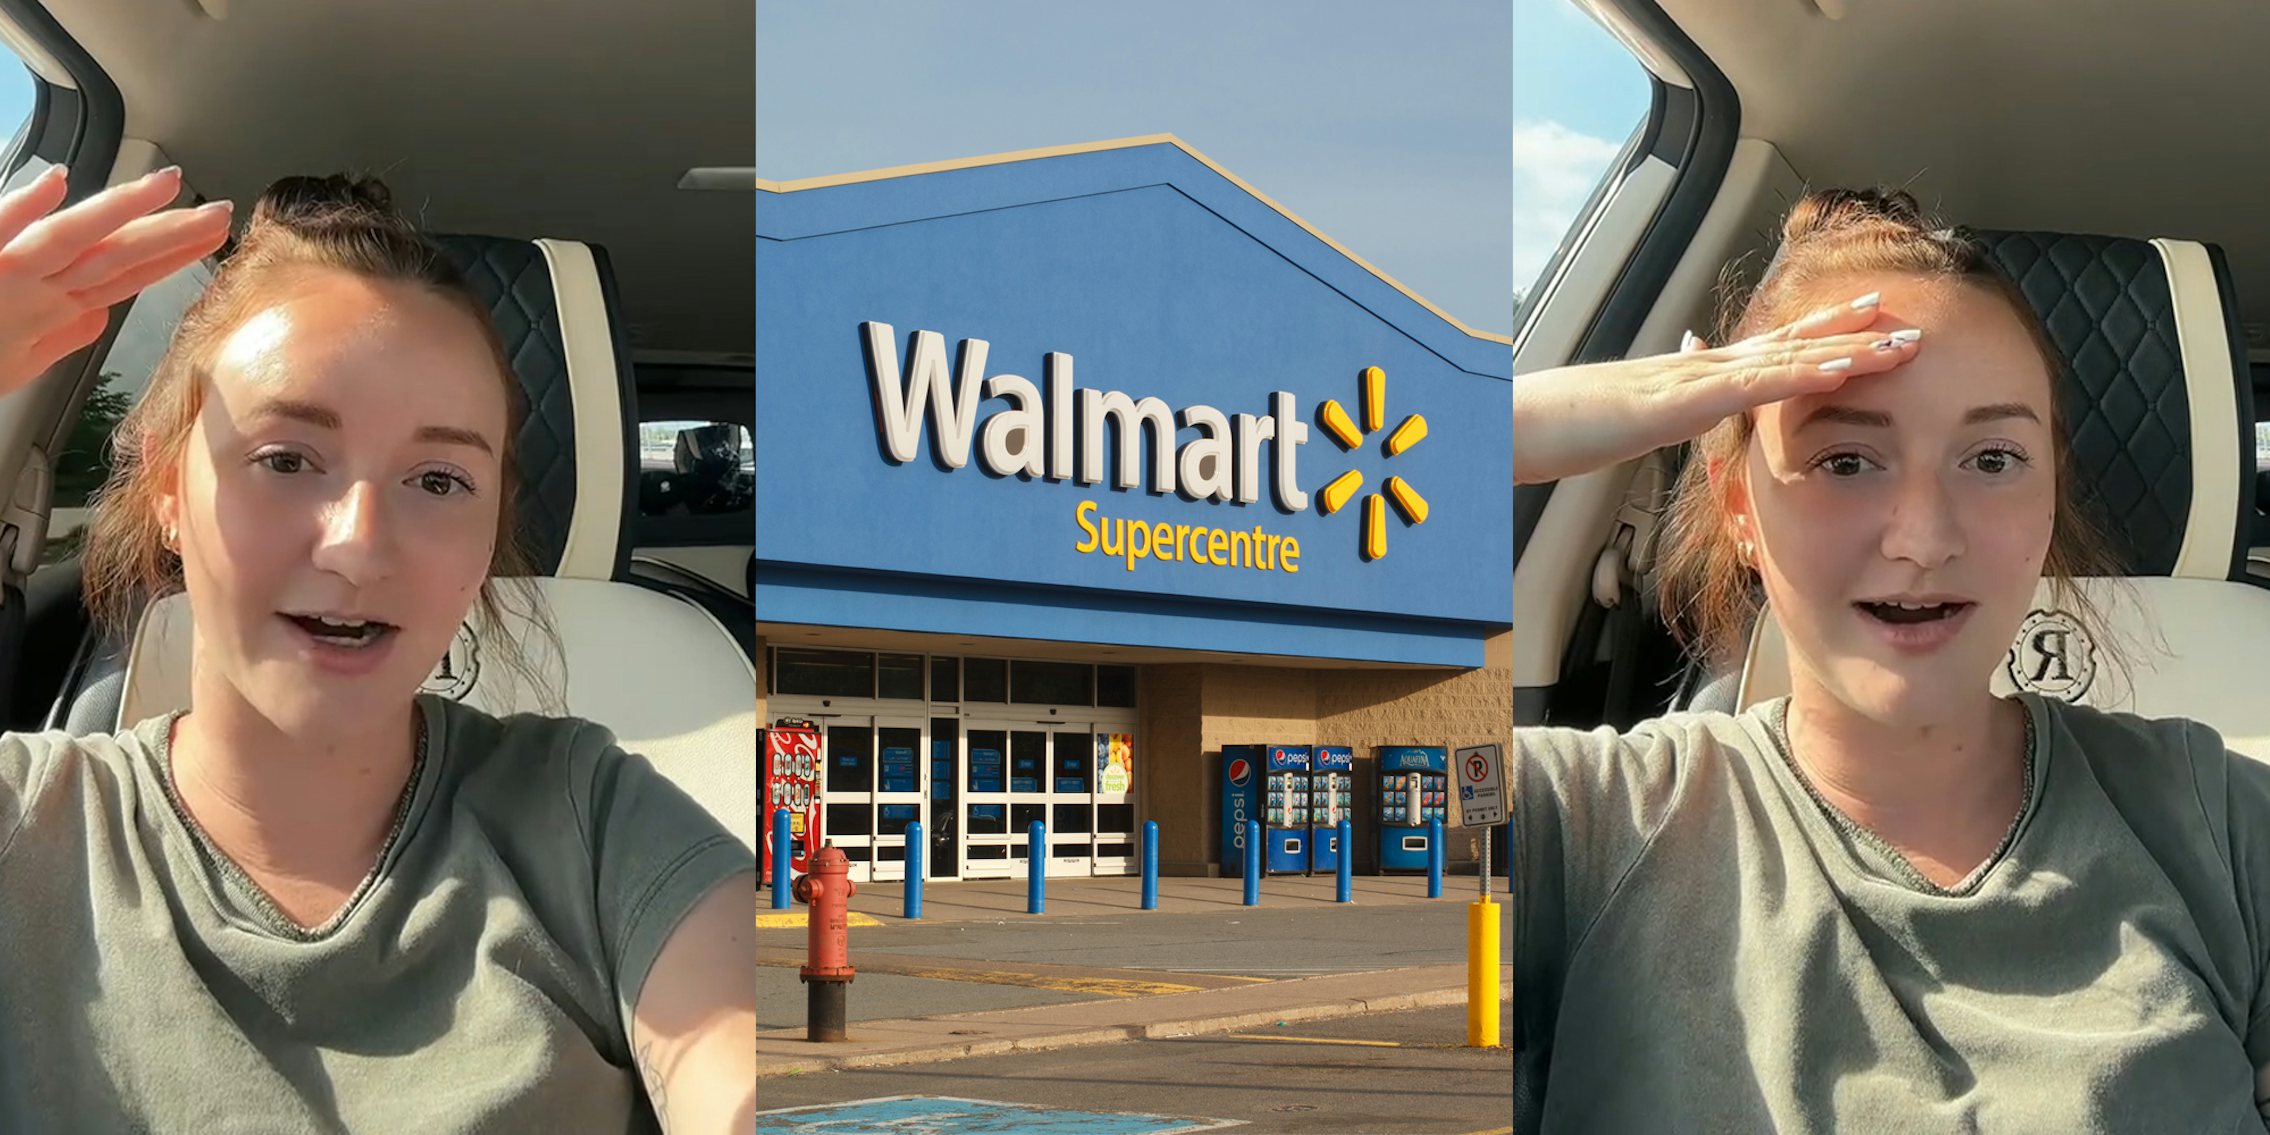 Walmart worker speaking in car (l) Walmart building with sign (c) Walmart worker speaking in car (r)